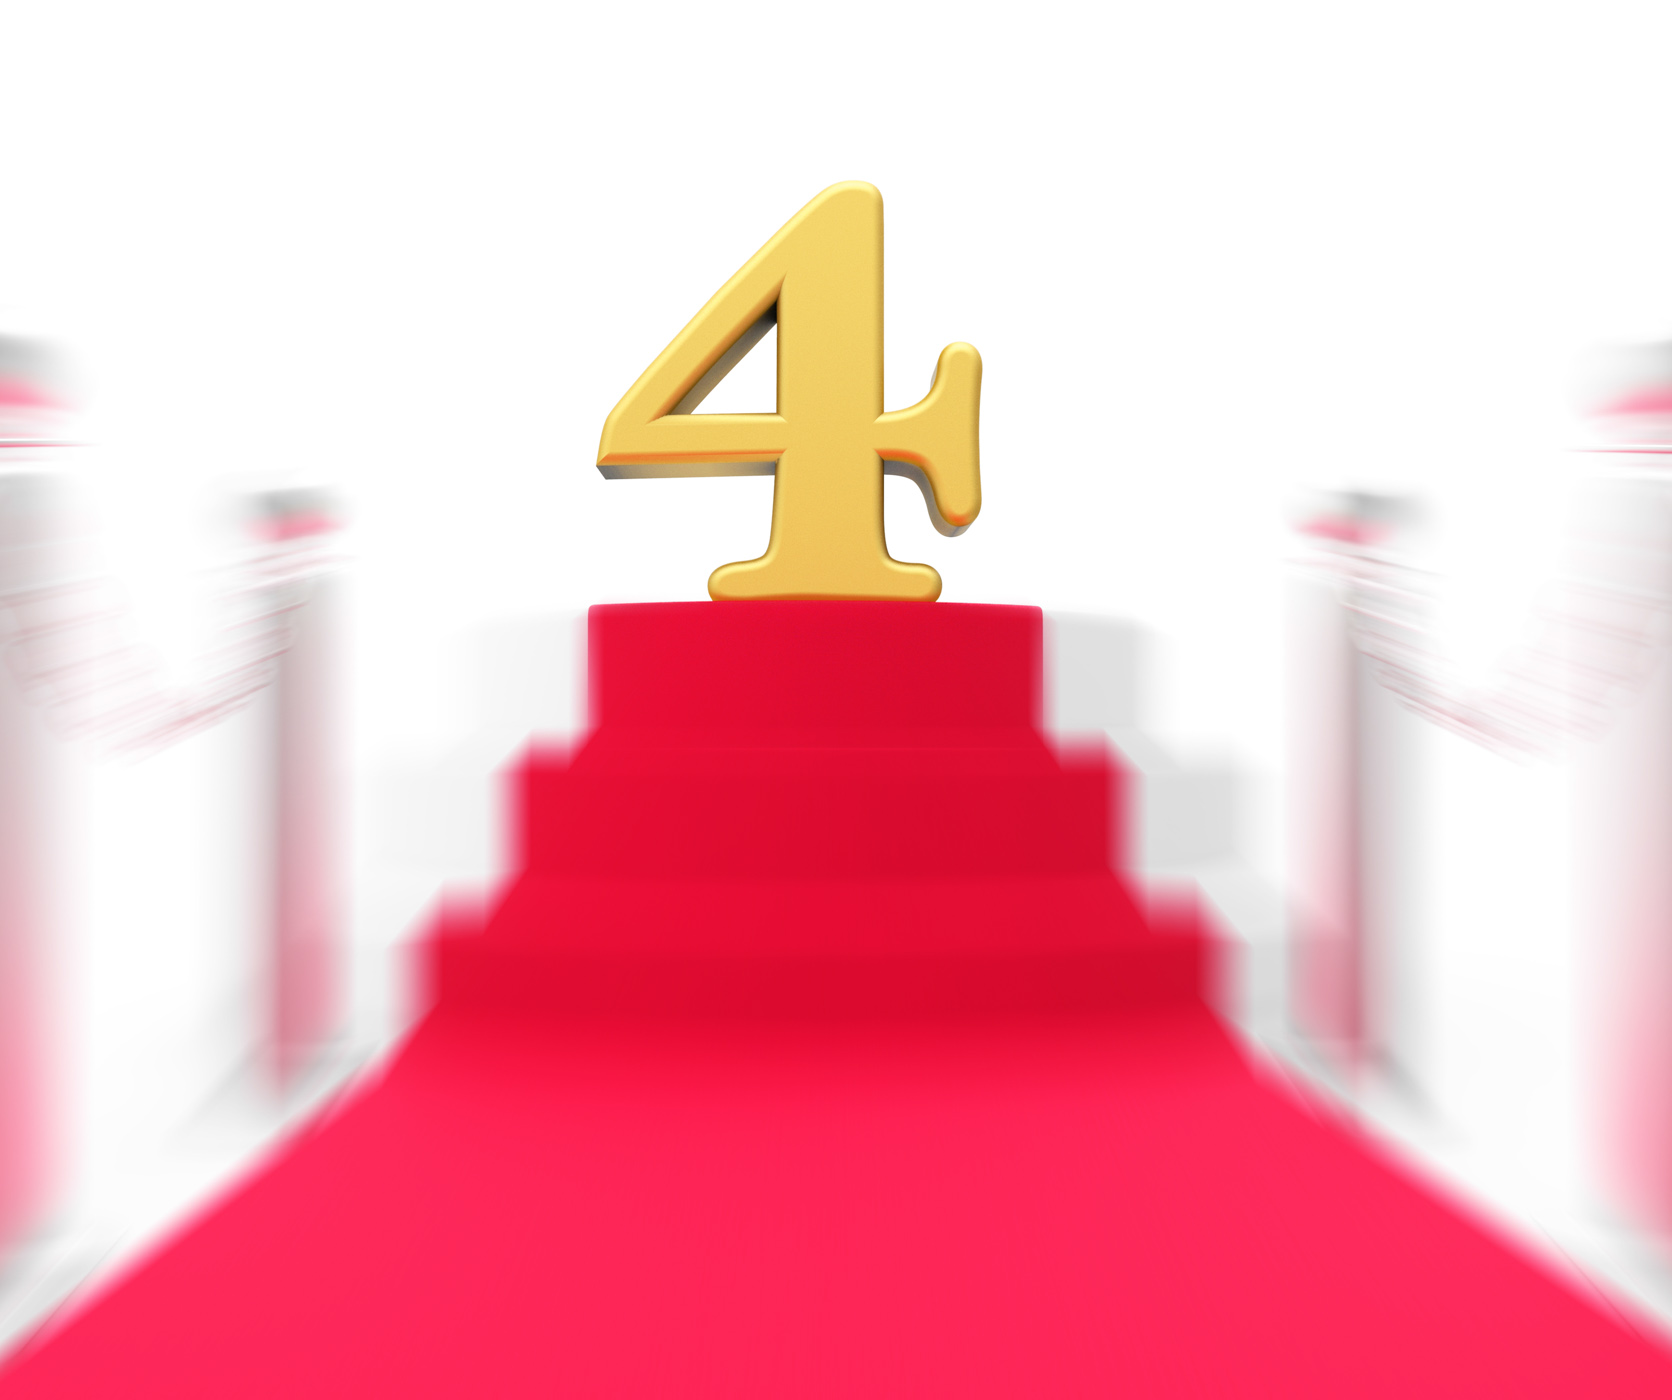 Golden four on red carpet displays elegant film event or celebration photo